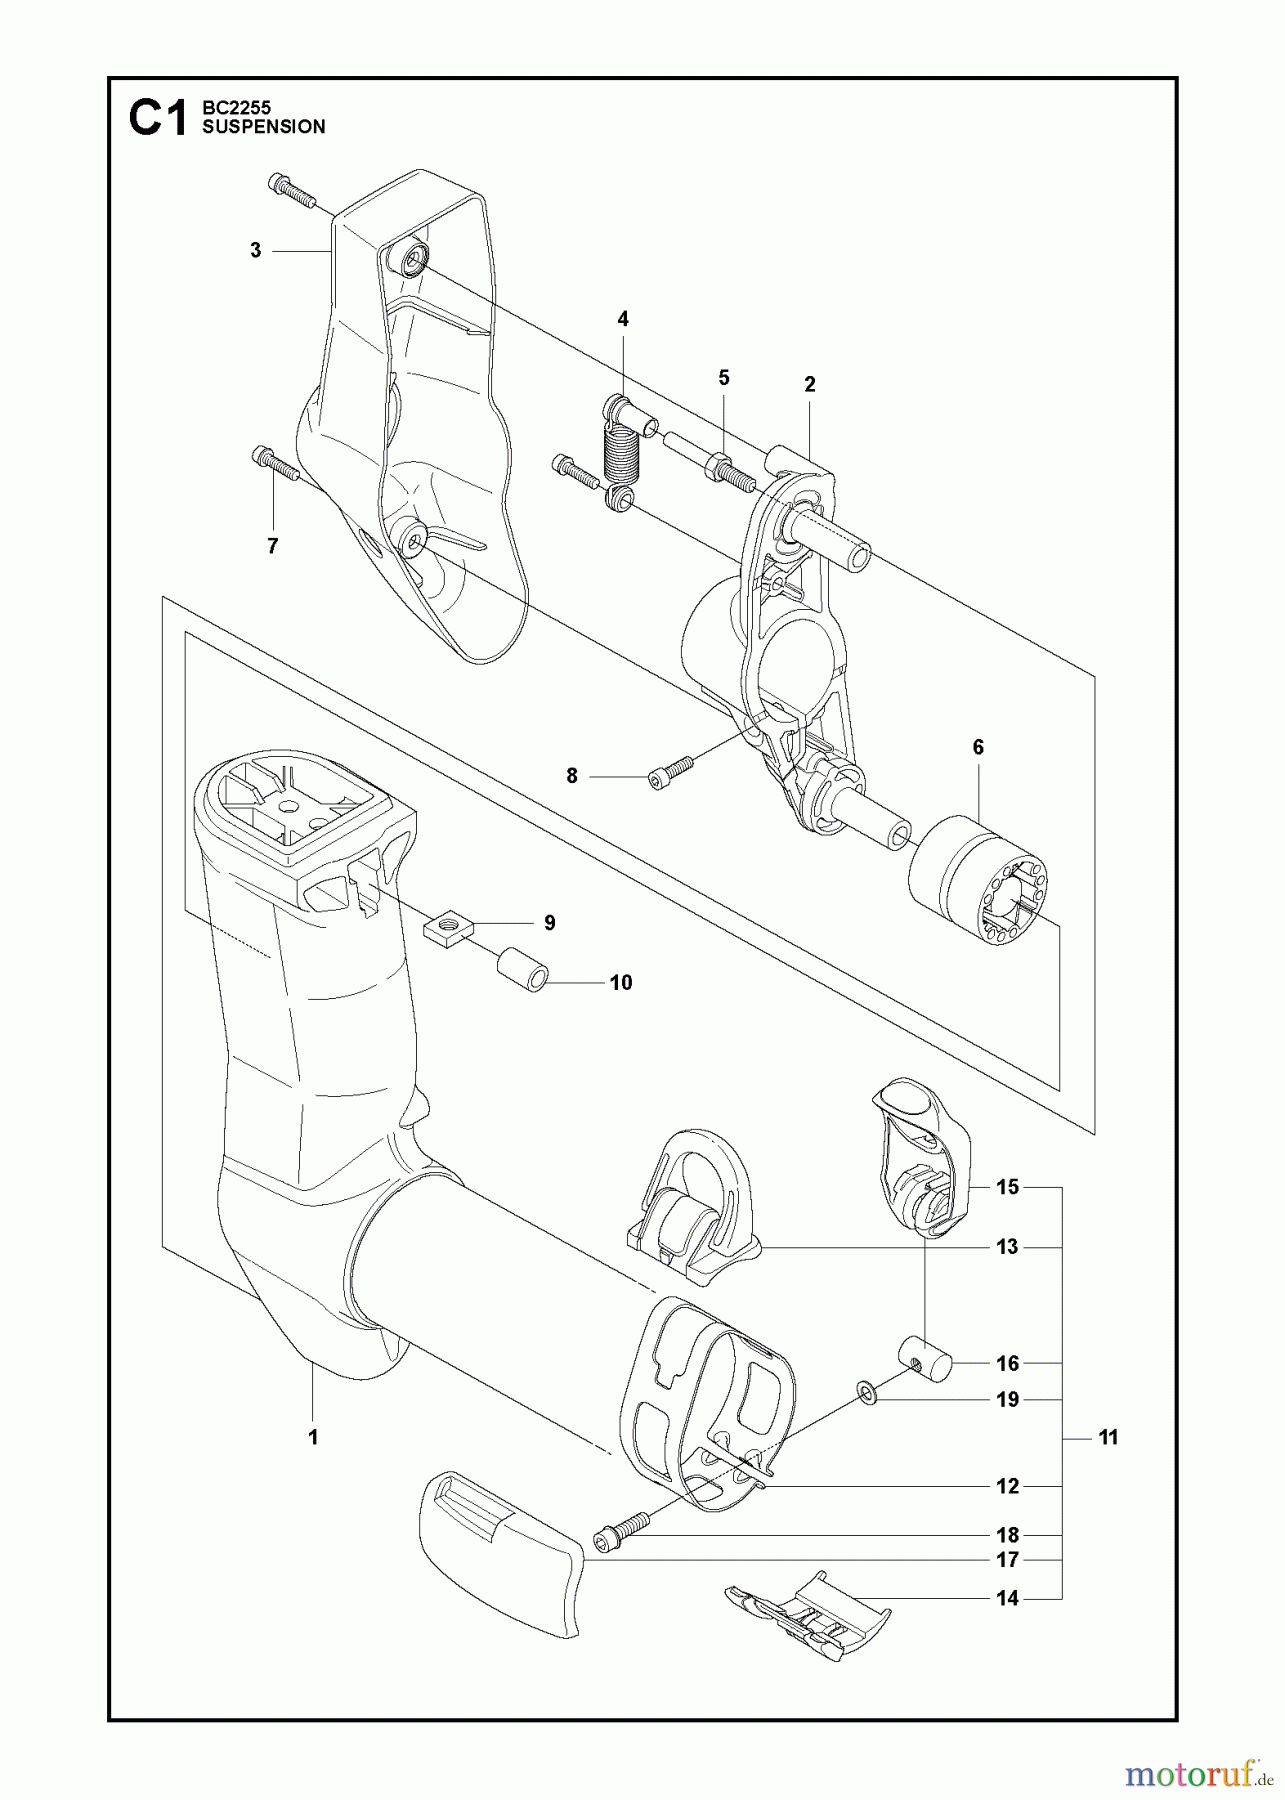  Jonsered Motorsensen, Trimmer BC2255 - Jonsered Brushcutter (2011-01) SUSPENSION